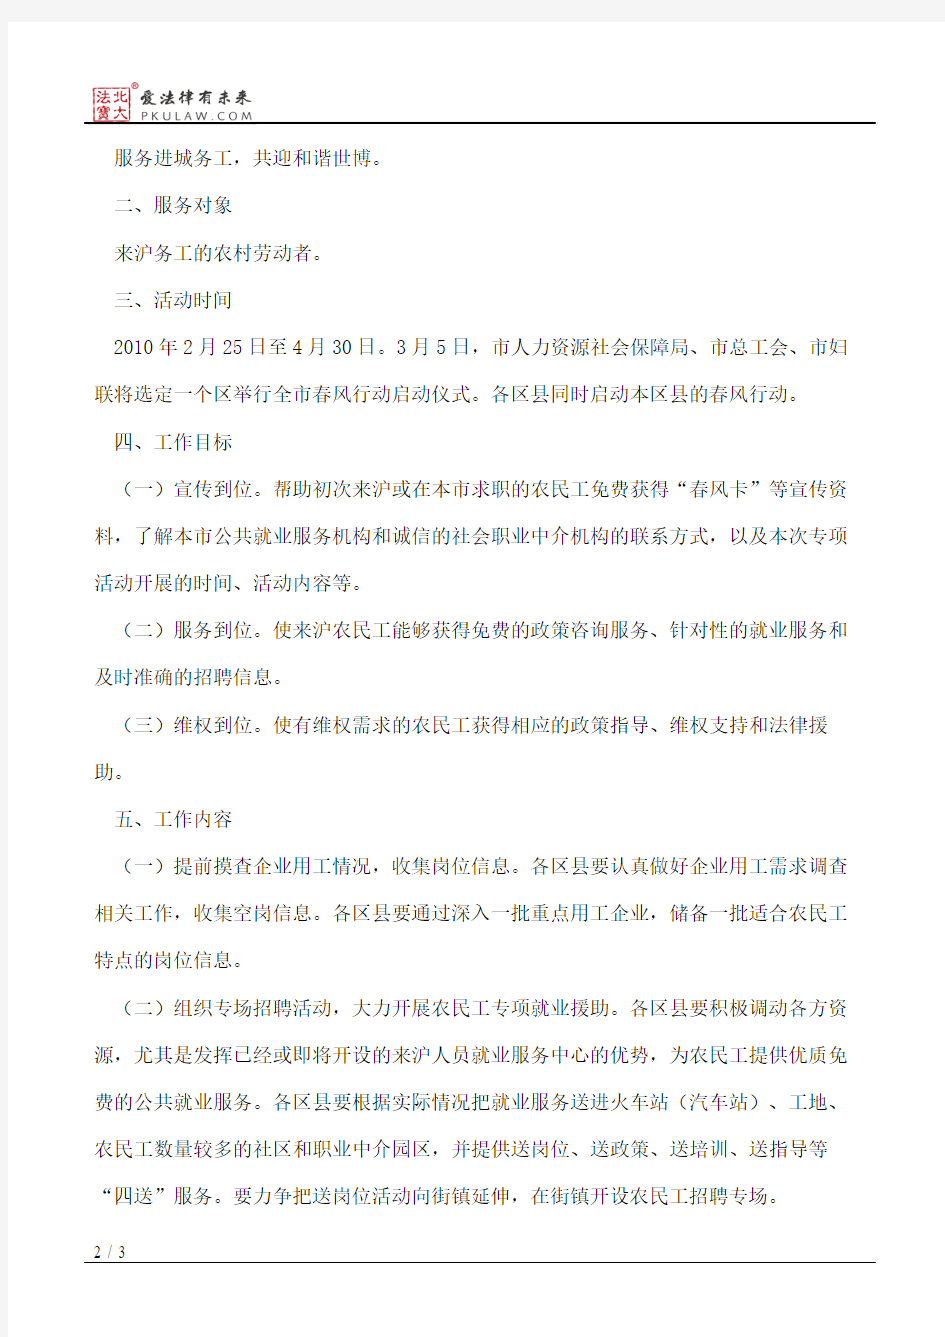 上海市人力资源和社会保障局、上海市总工会、上海市妇女联合会关